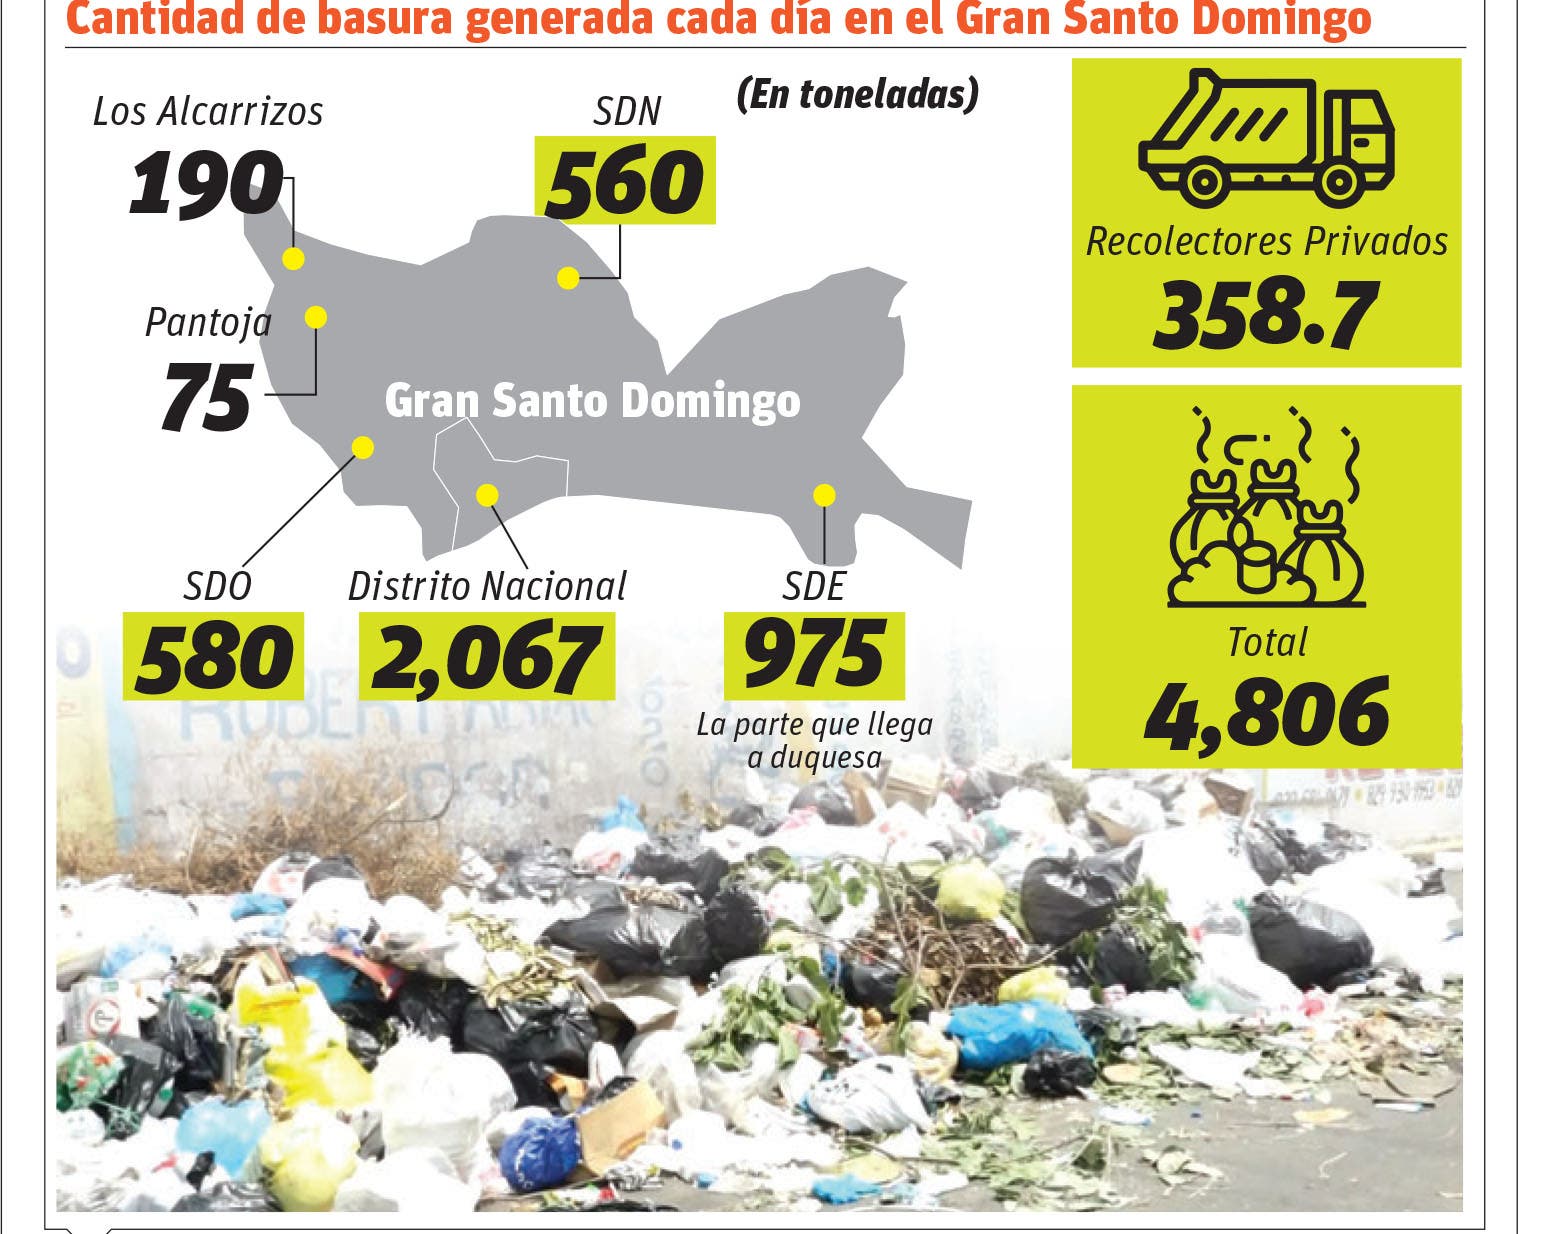 La basura es causa de mala fama en SDE